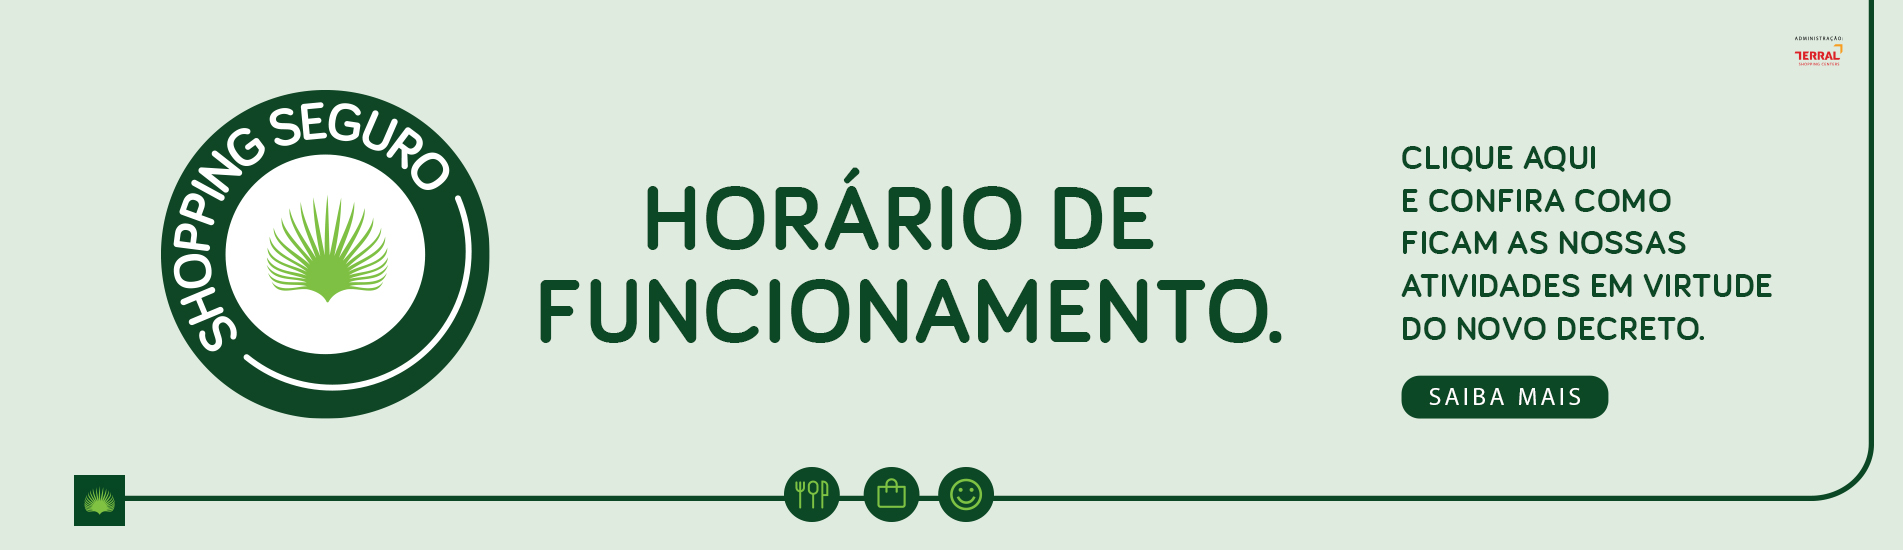 HORÁRIO DE FUNCIONAMENTO